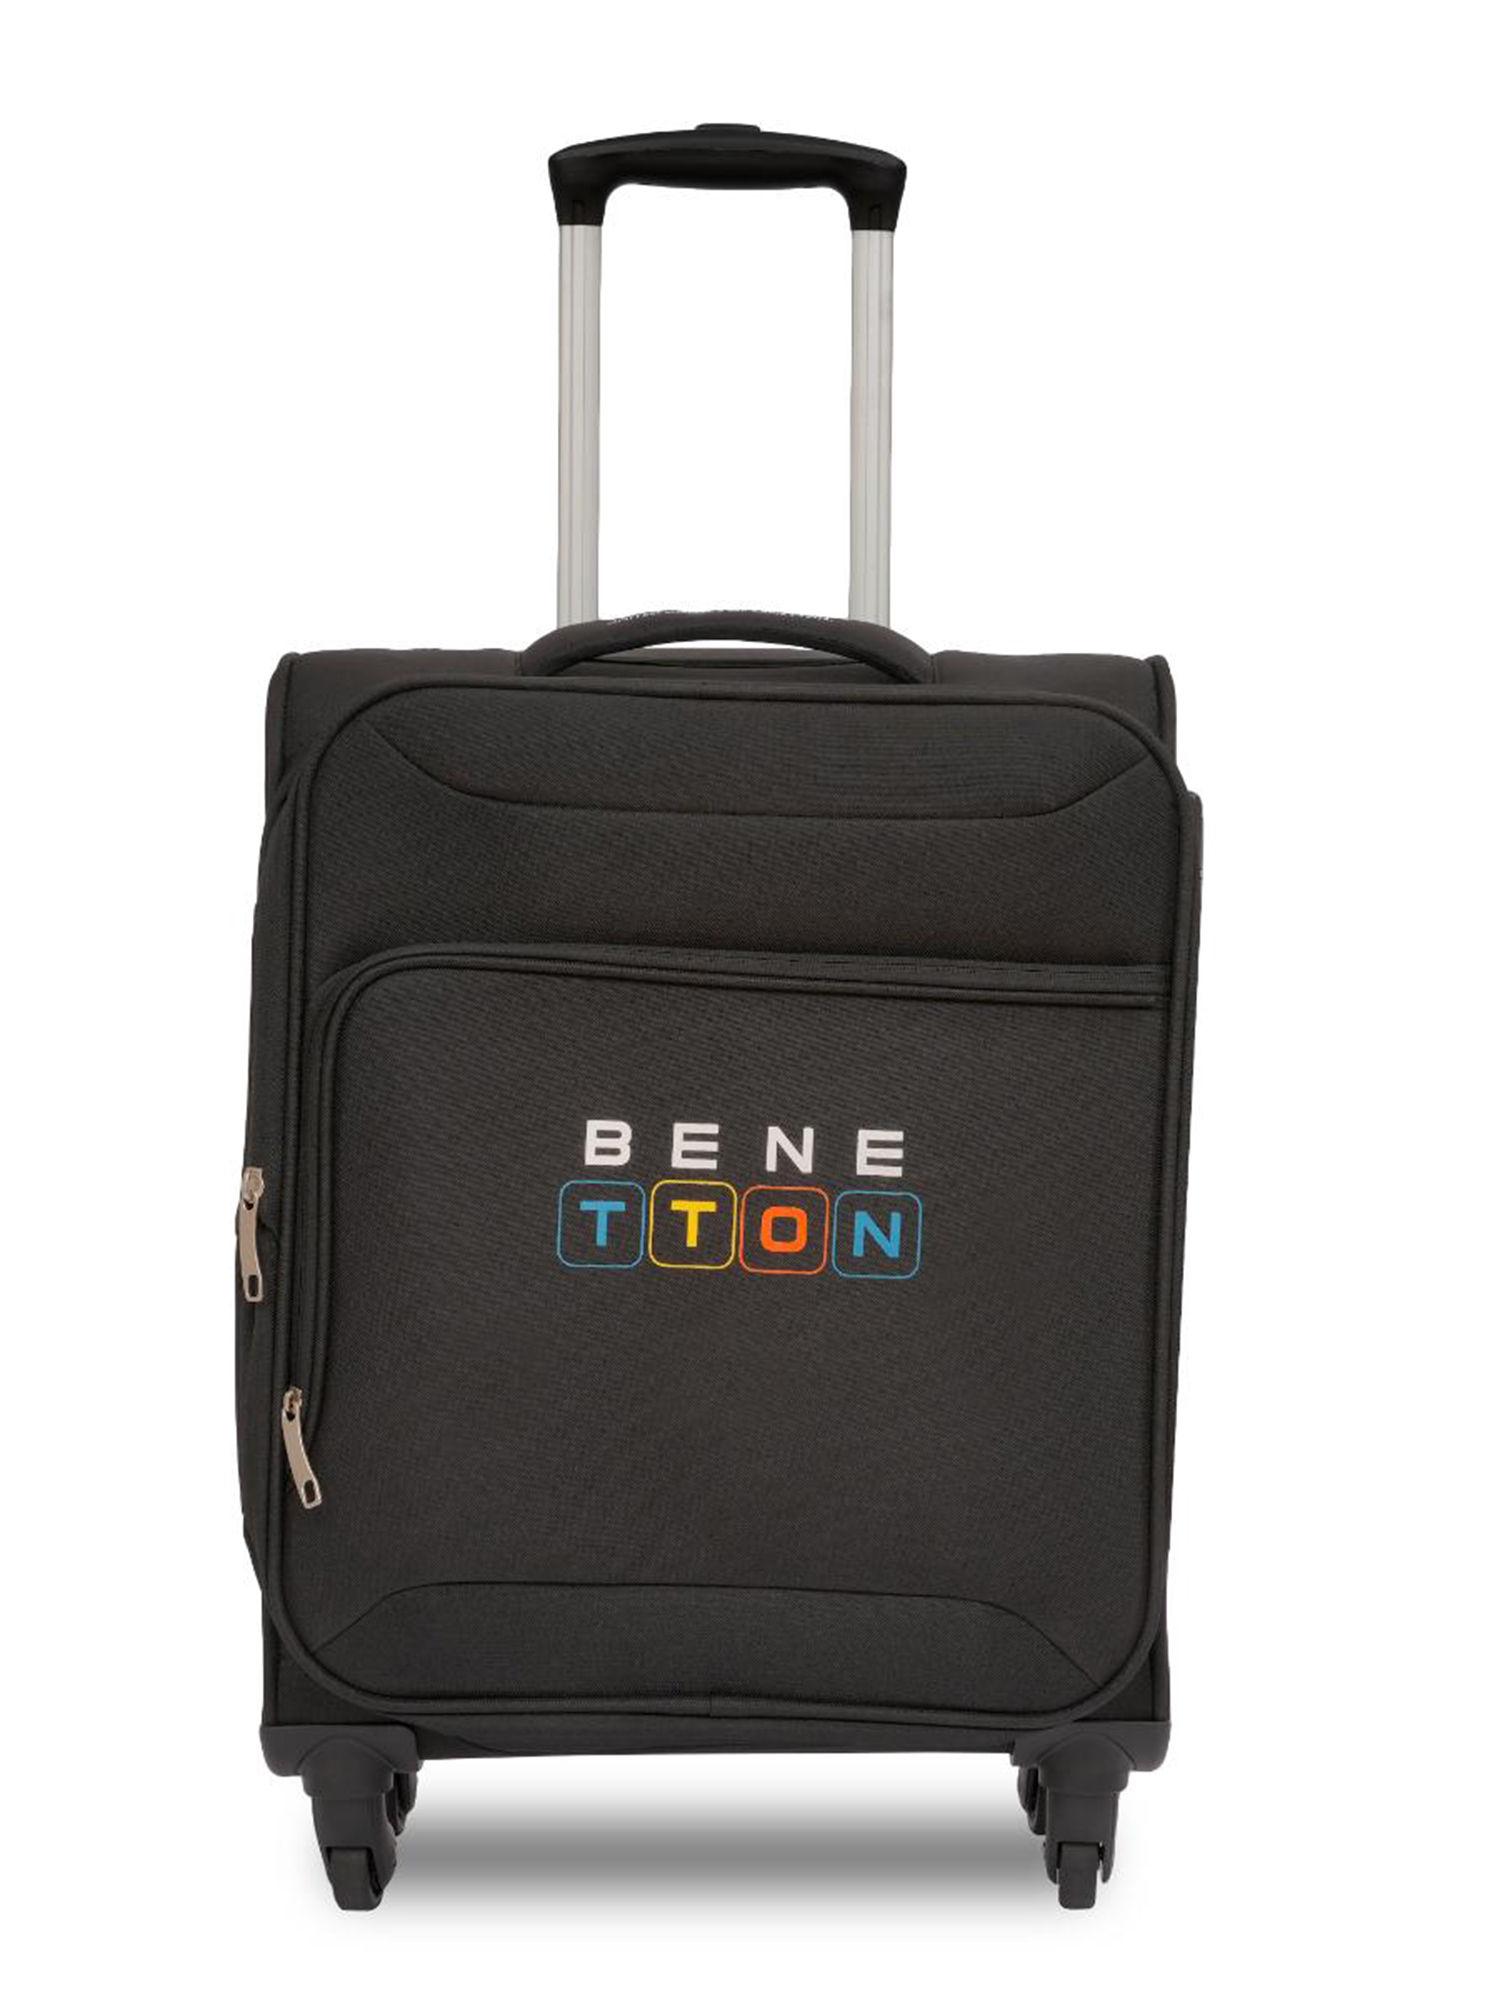 macau unisex soft luggage black, tsa lock trolley bag